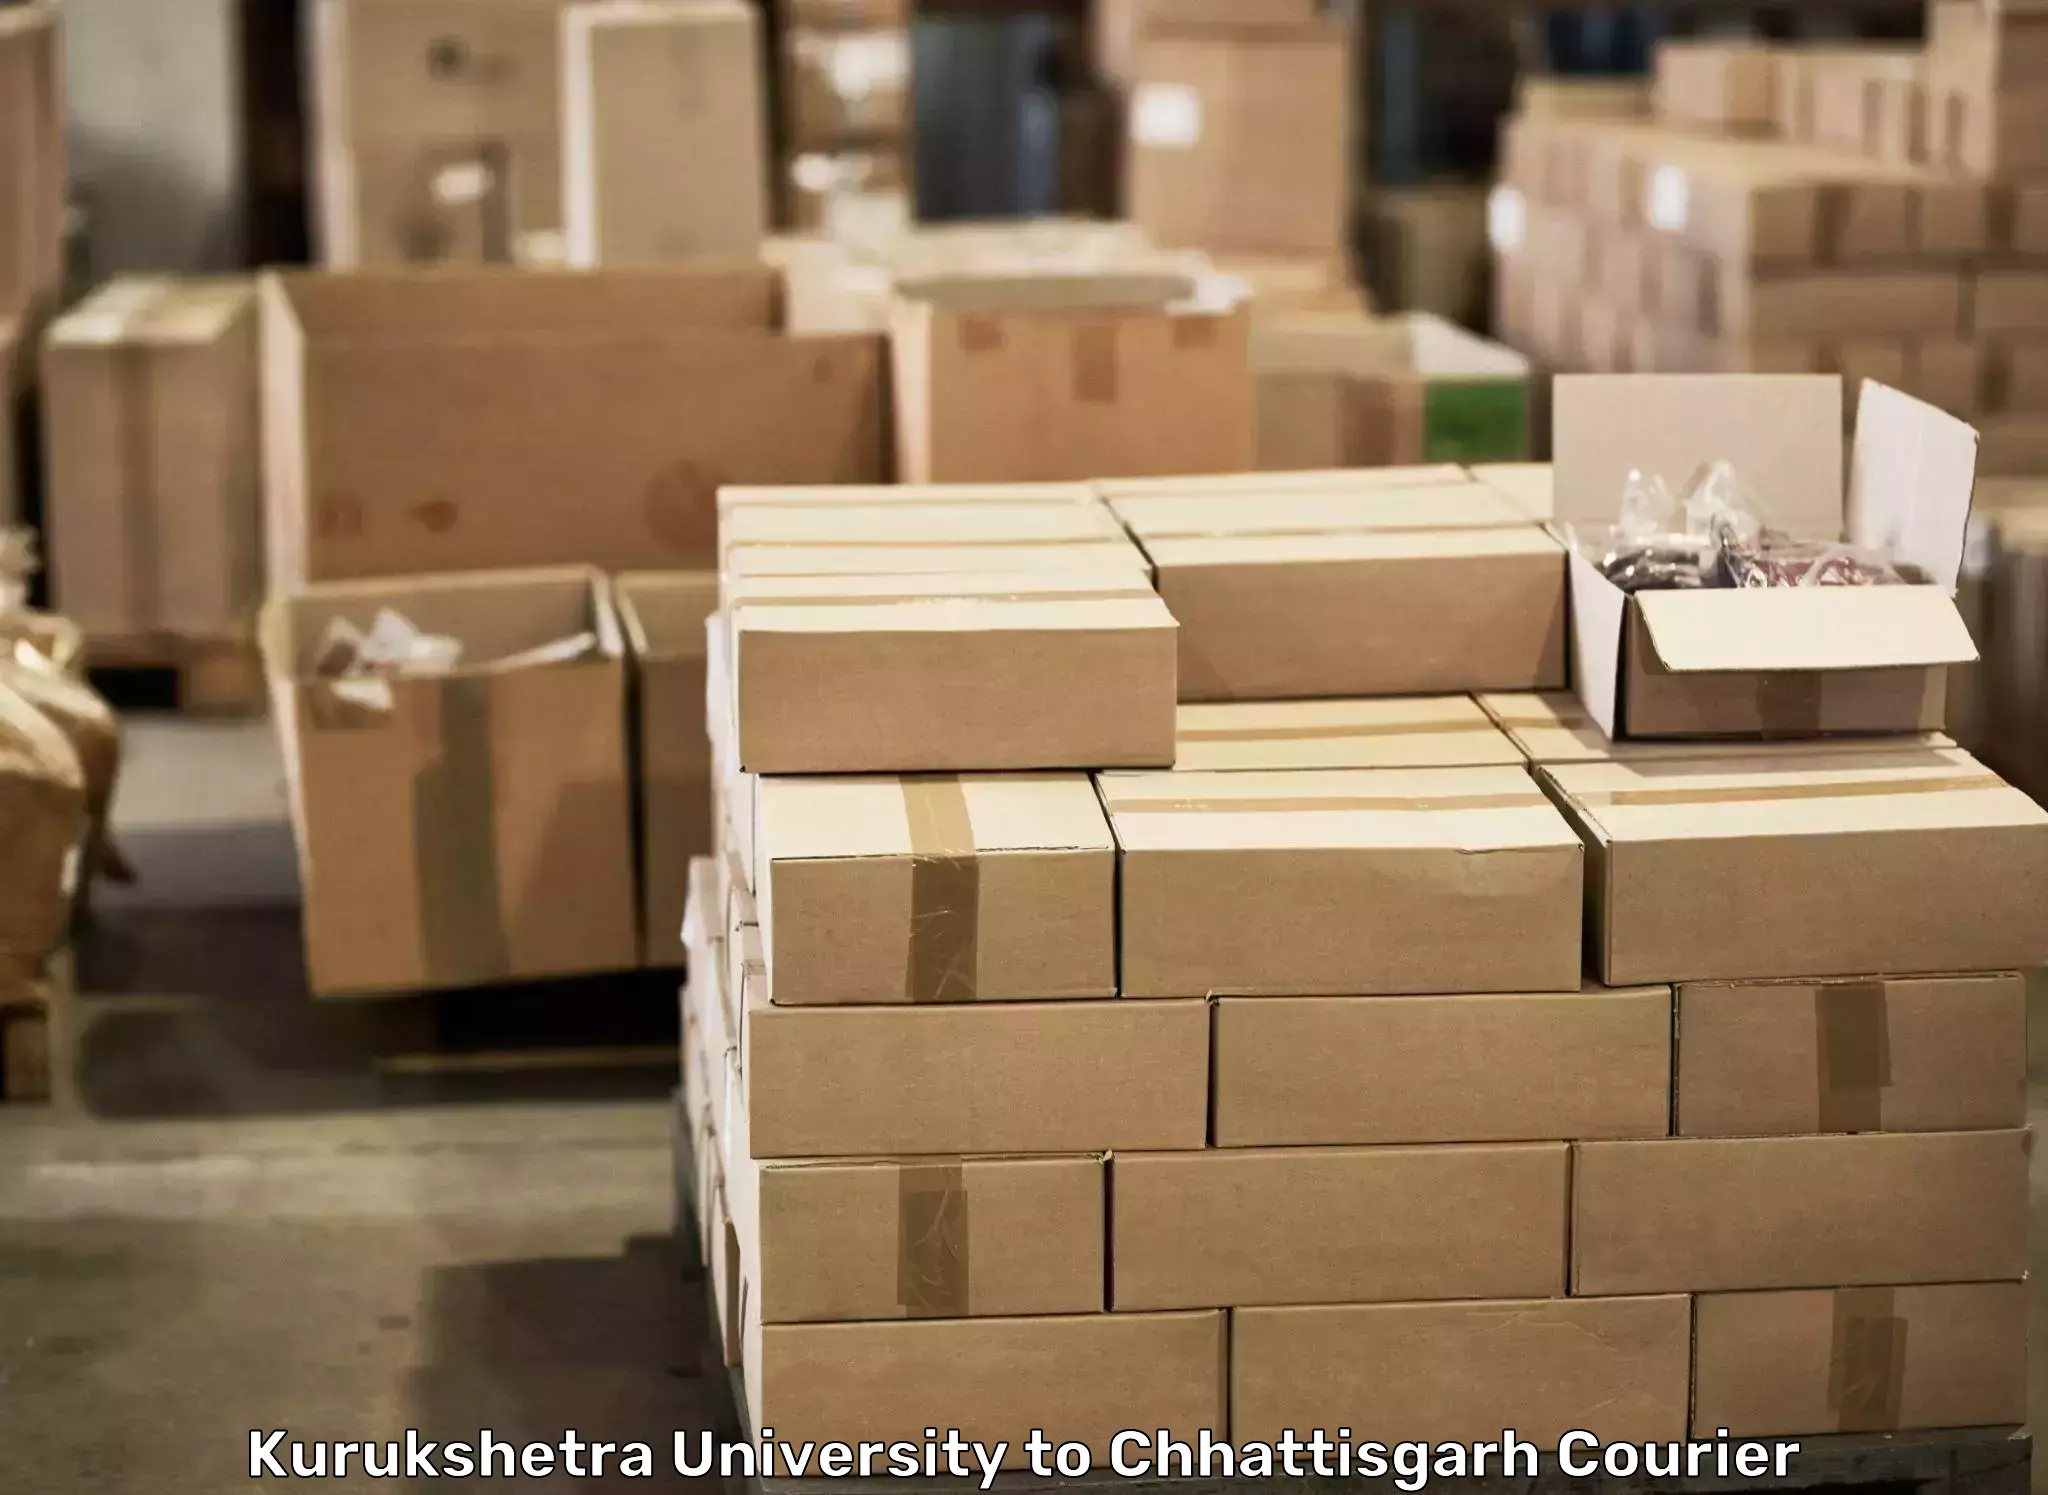 Furniture transport experts Kurukshetra University to Bilaspur